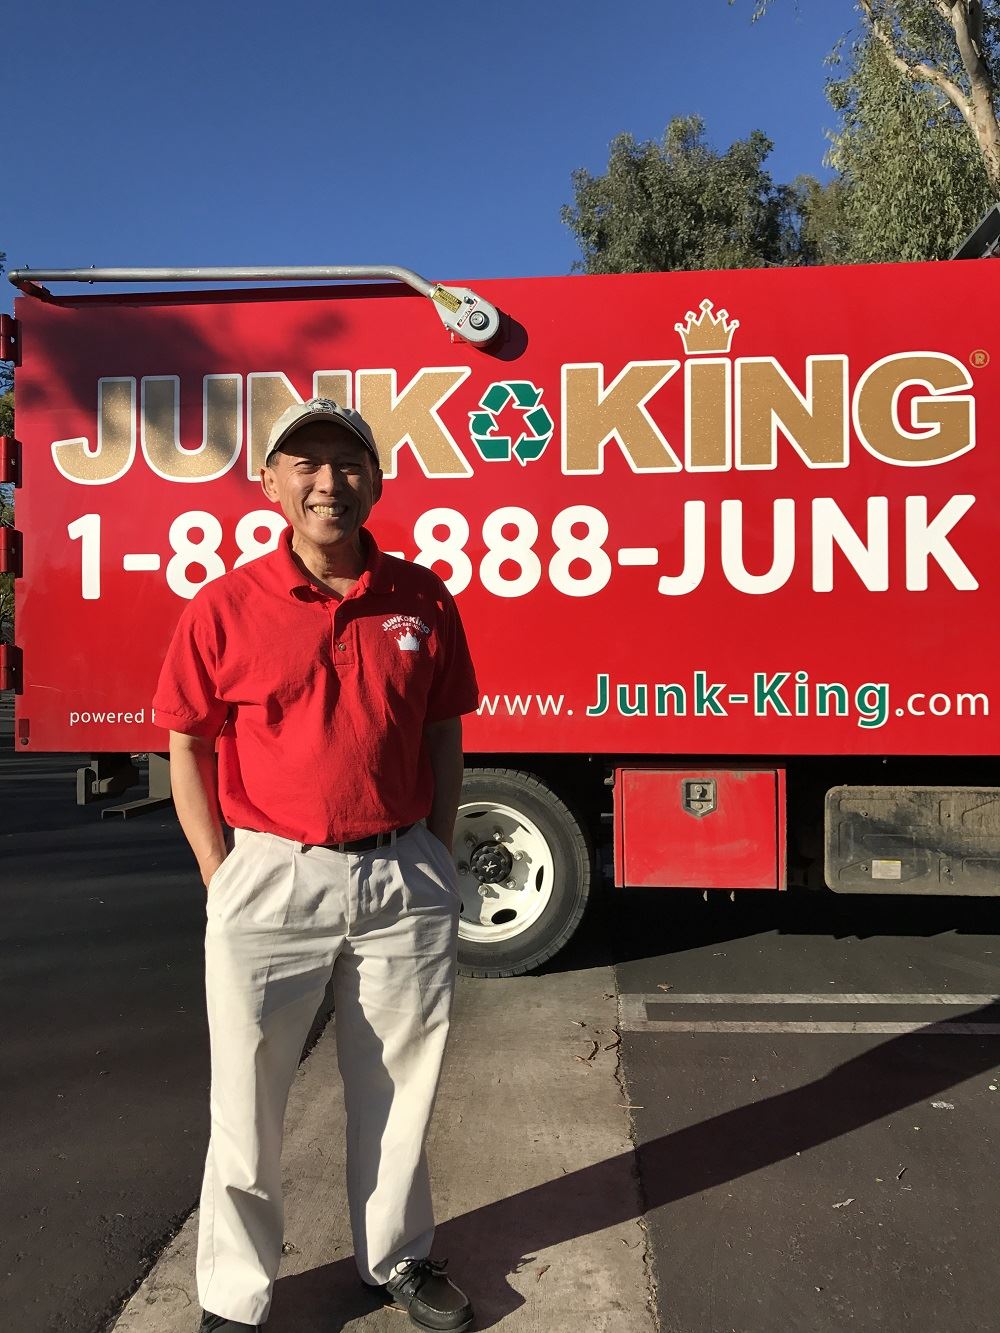 Junk King Franchise Owner